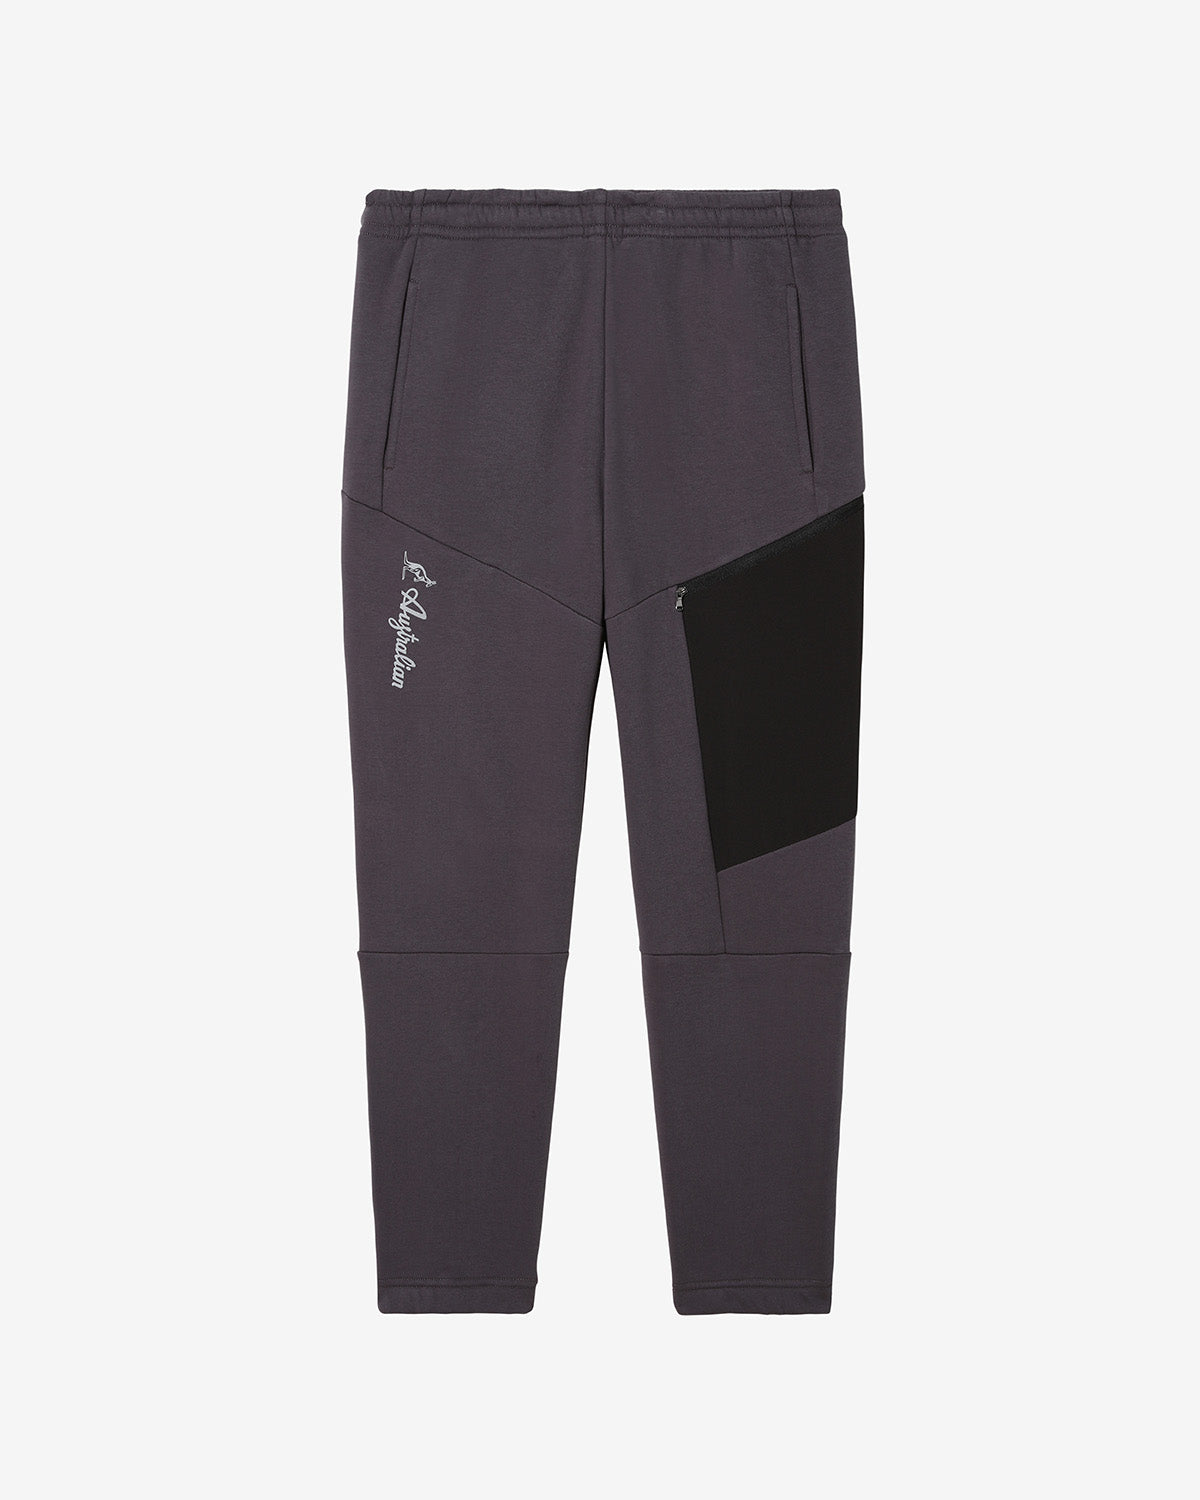 Tek Fleece Pant: Australian Sportswear